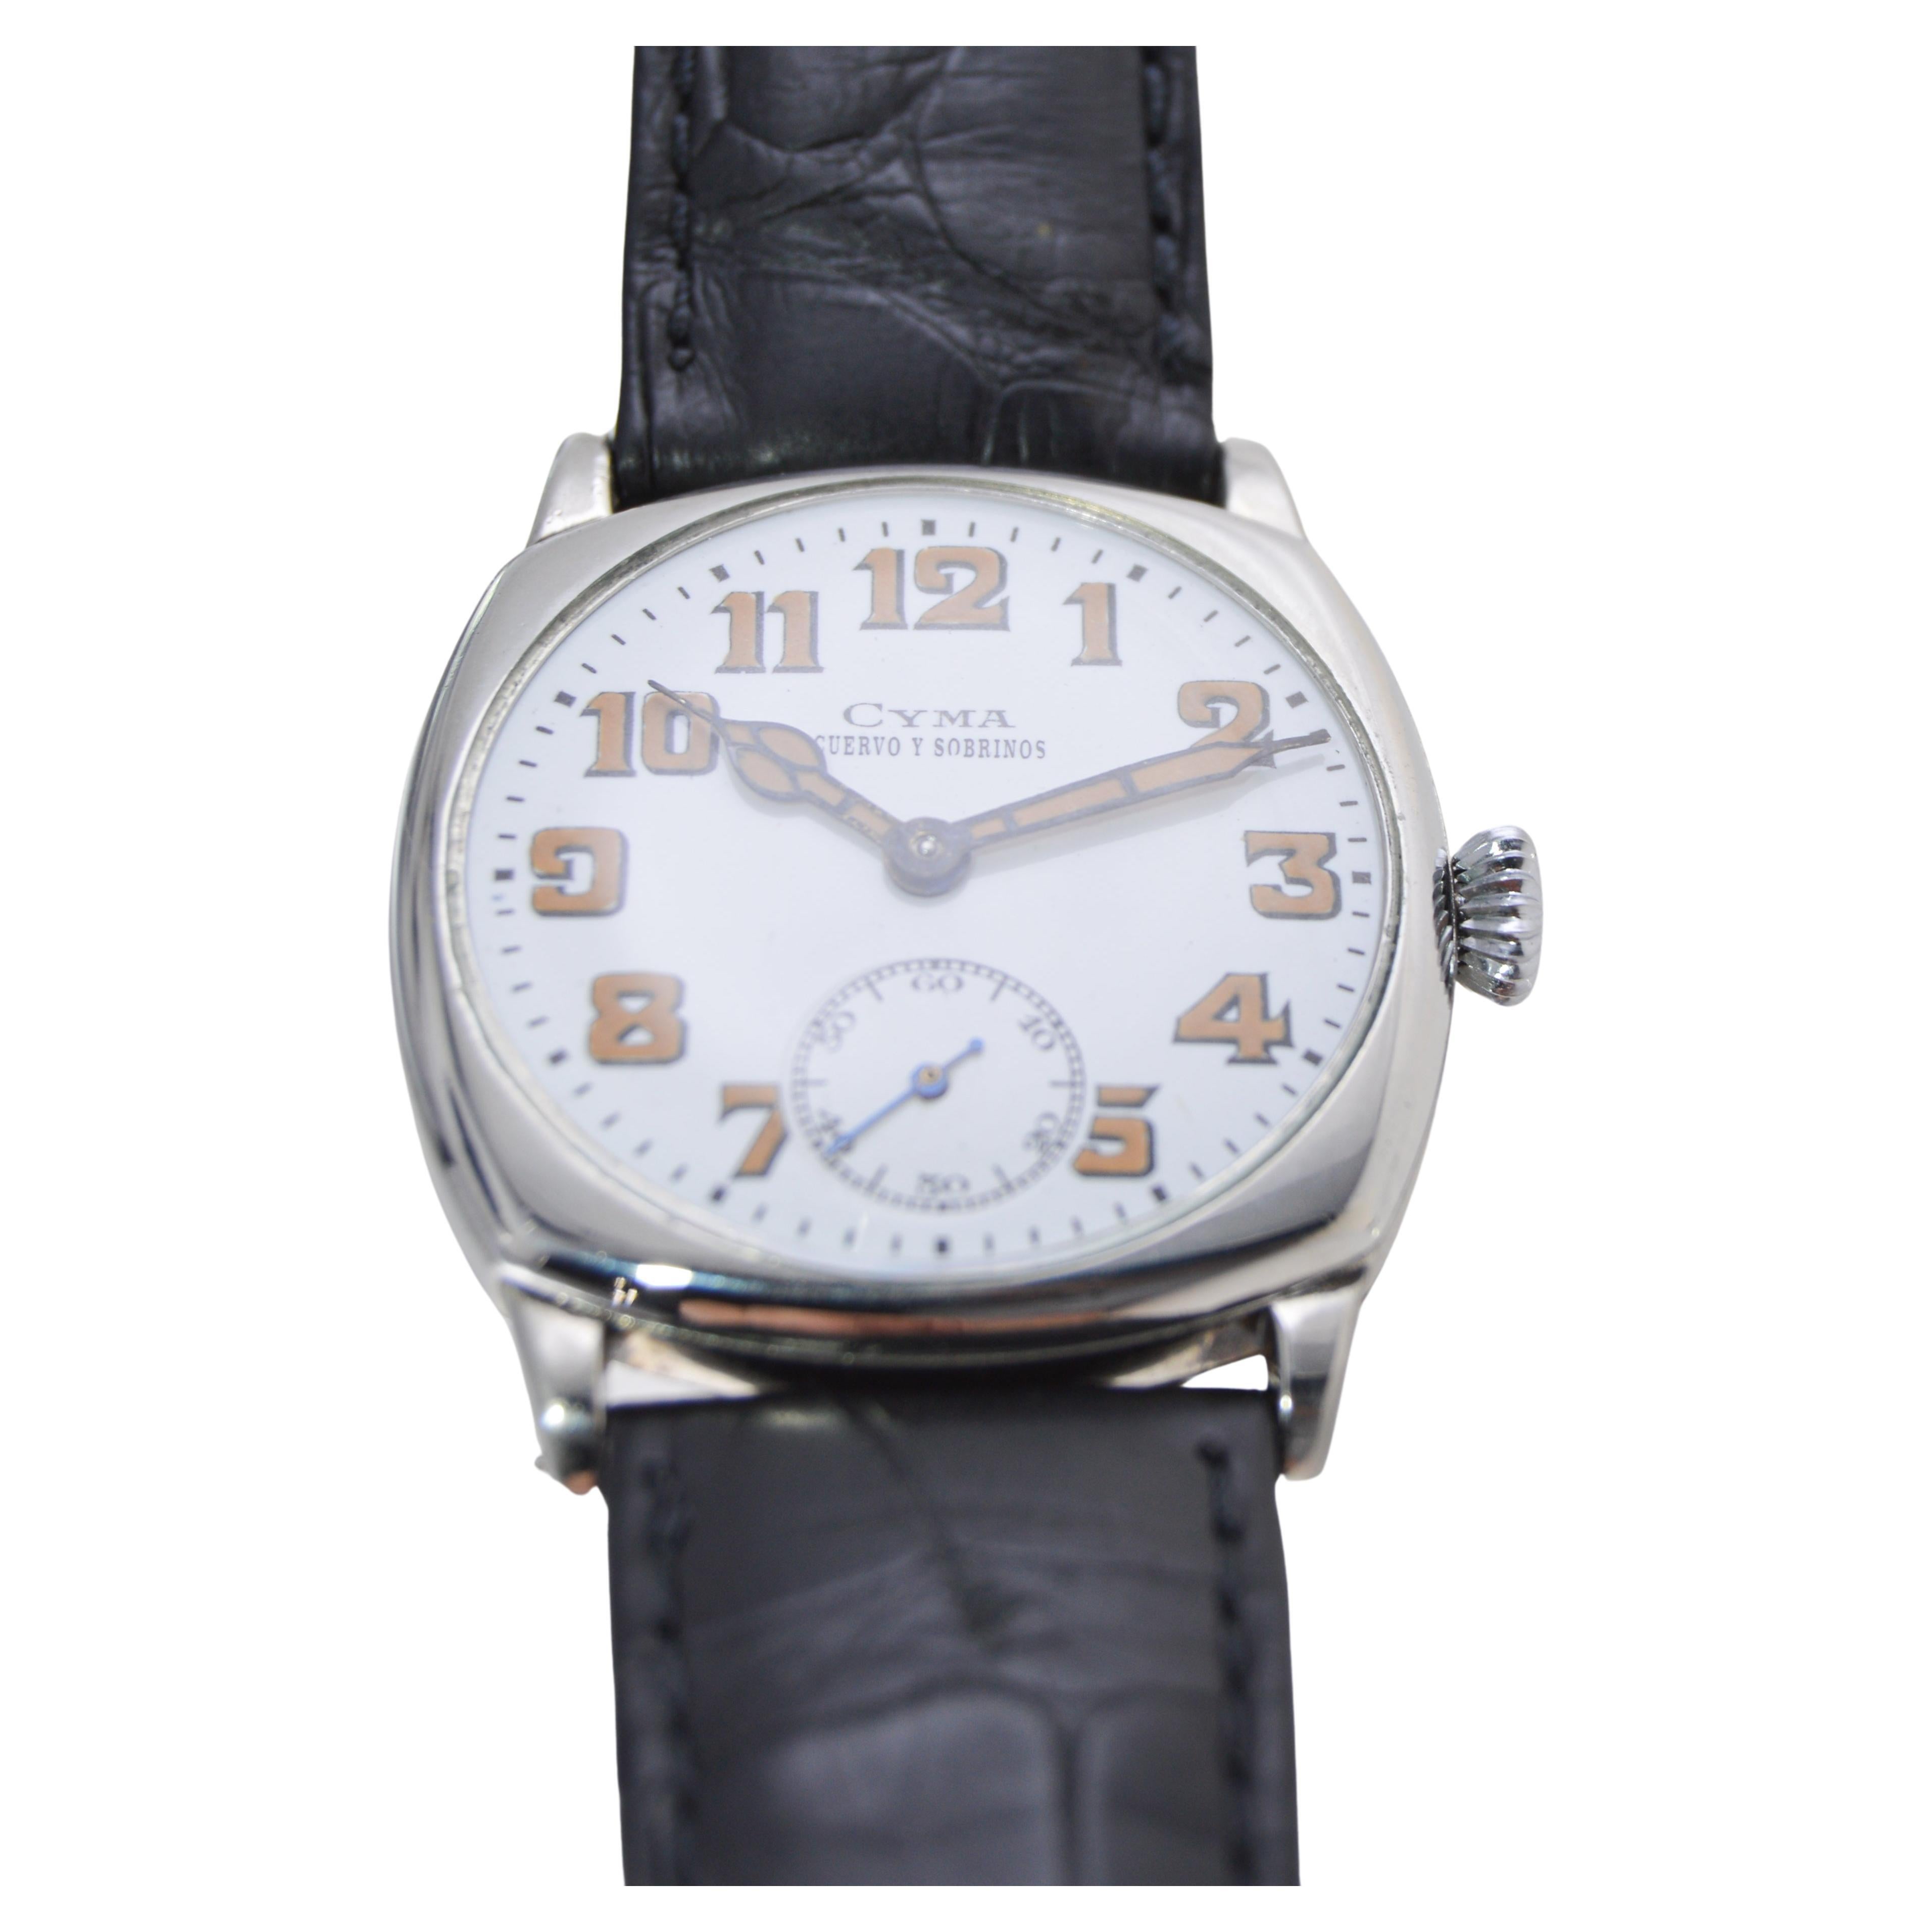 Cyma for Cuervo & Sobrinos Nickel Watch For Sale 2